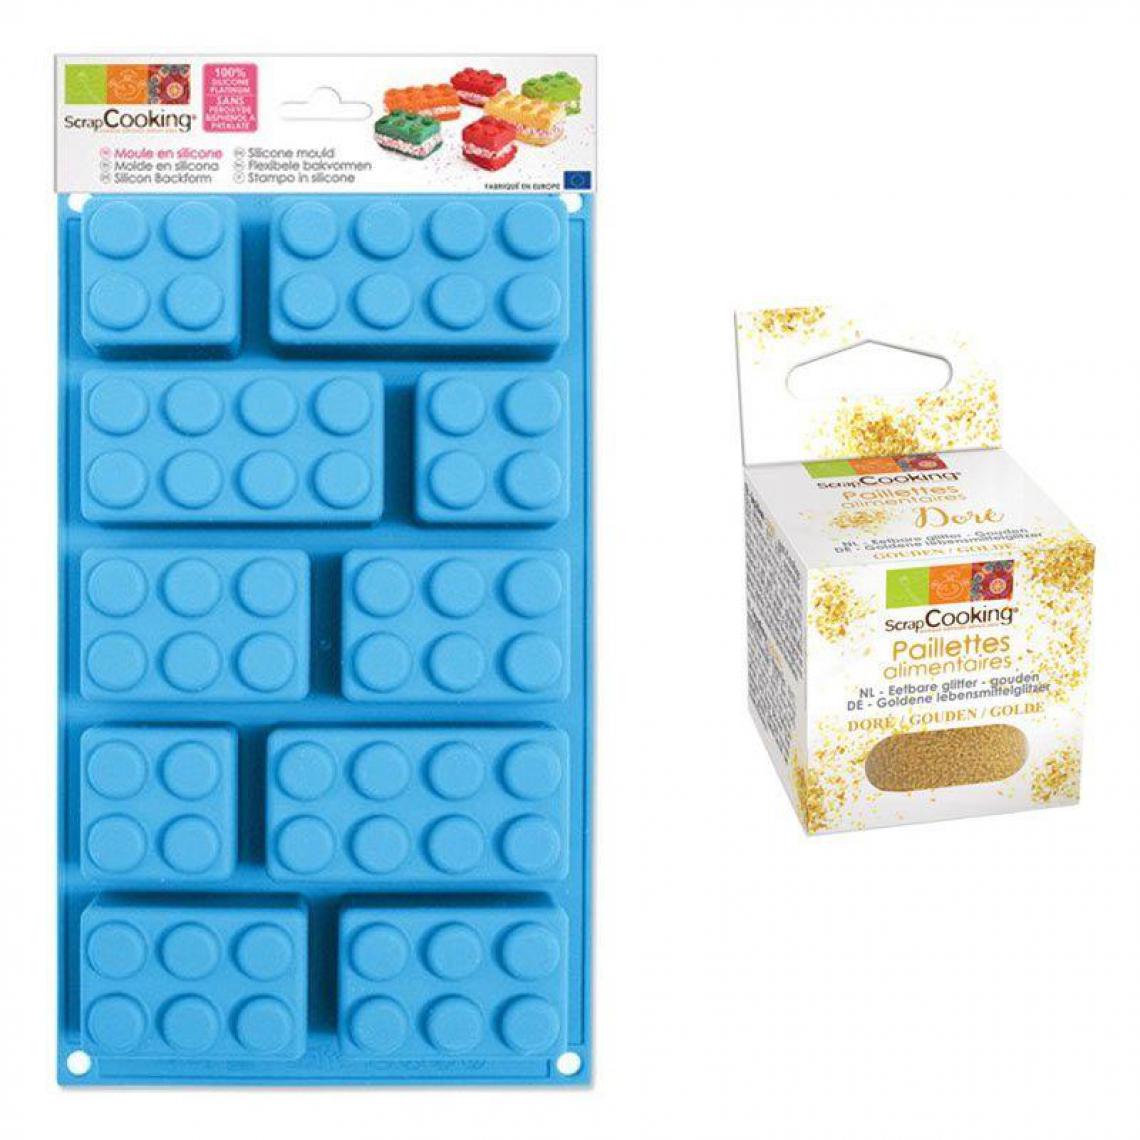 Scrapcooking - Moule en silicone briques + paillettes dorées - Kits créatifs